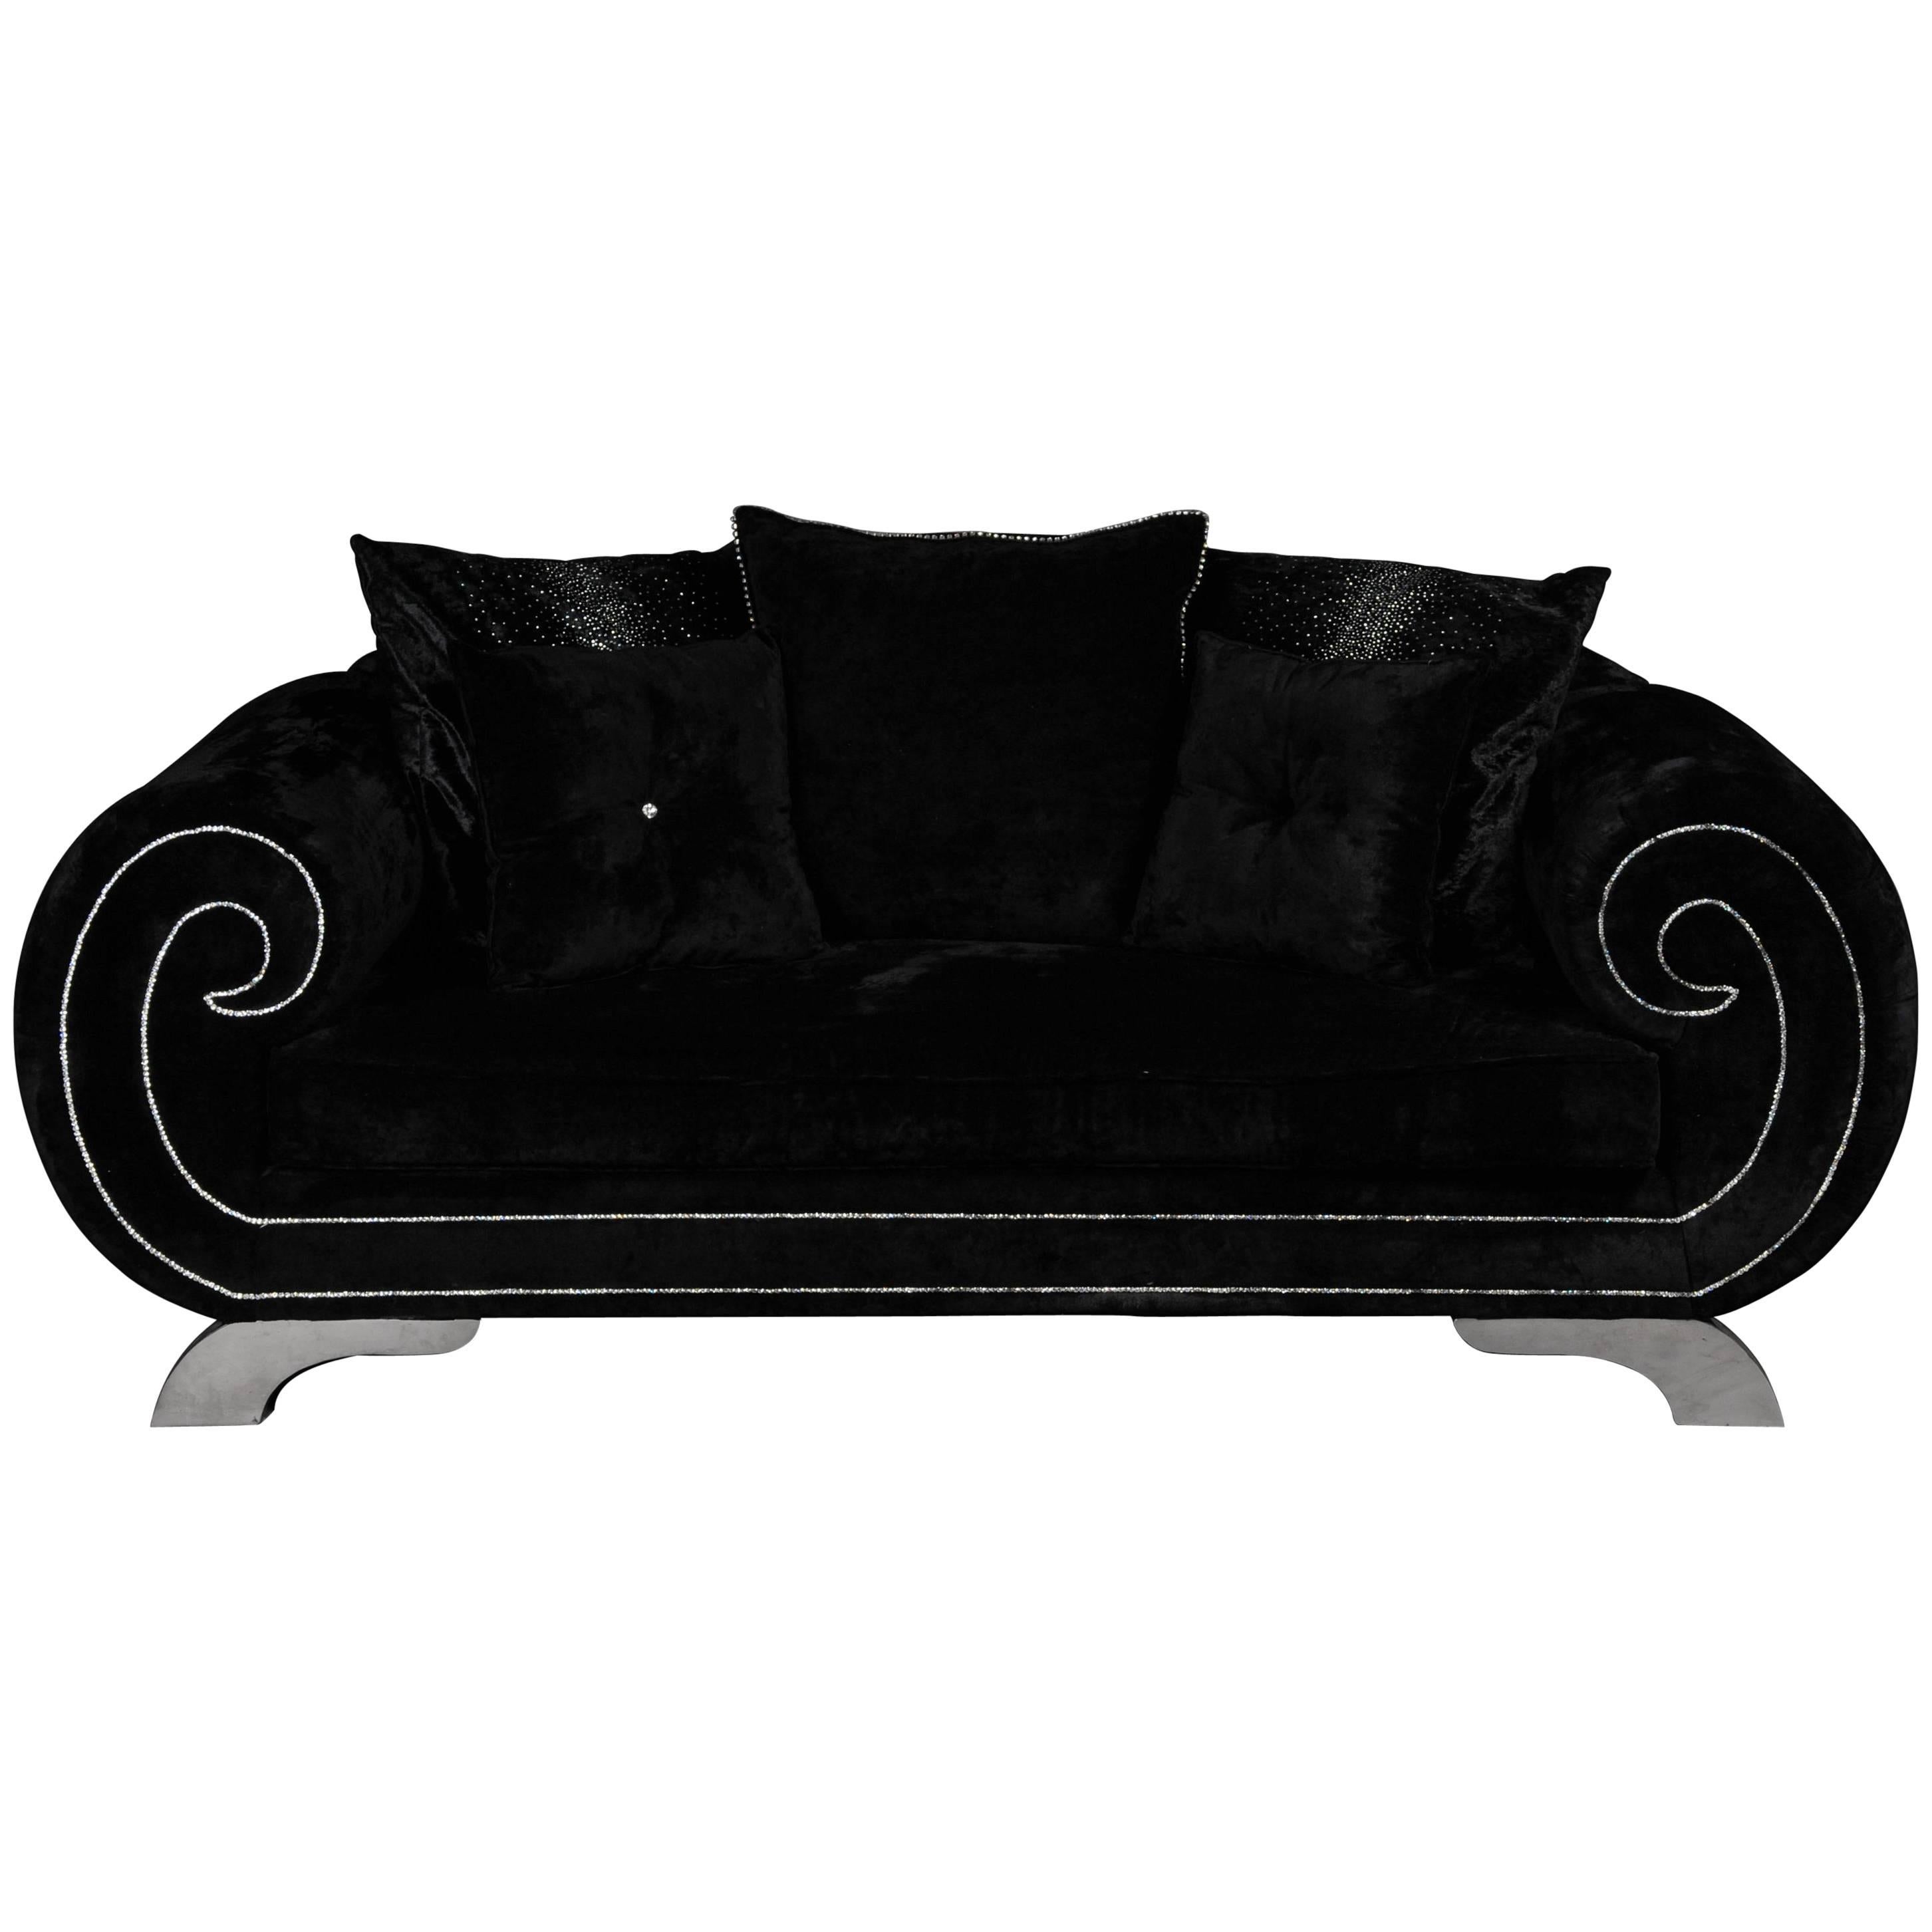 Unique Luxurious Designer Sofa or Couch, Rhinestones, Black Velvet. Highlight